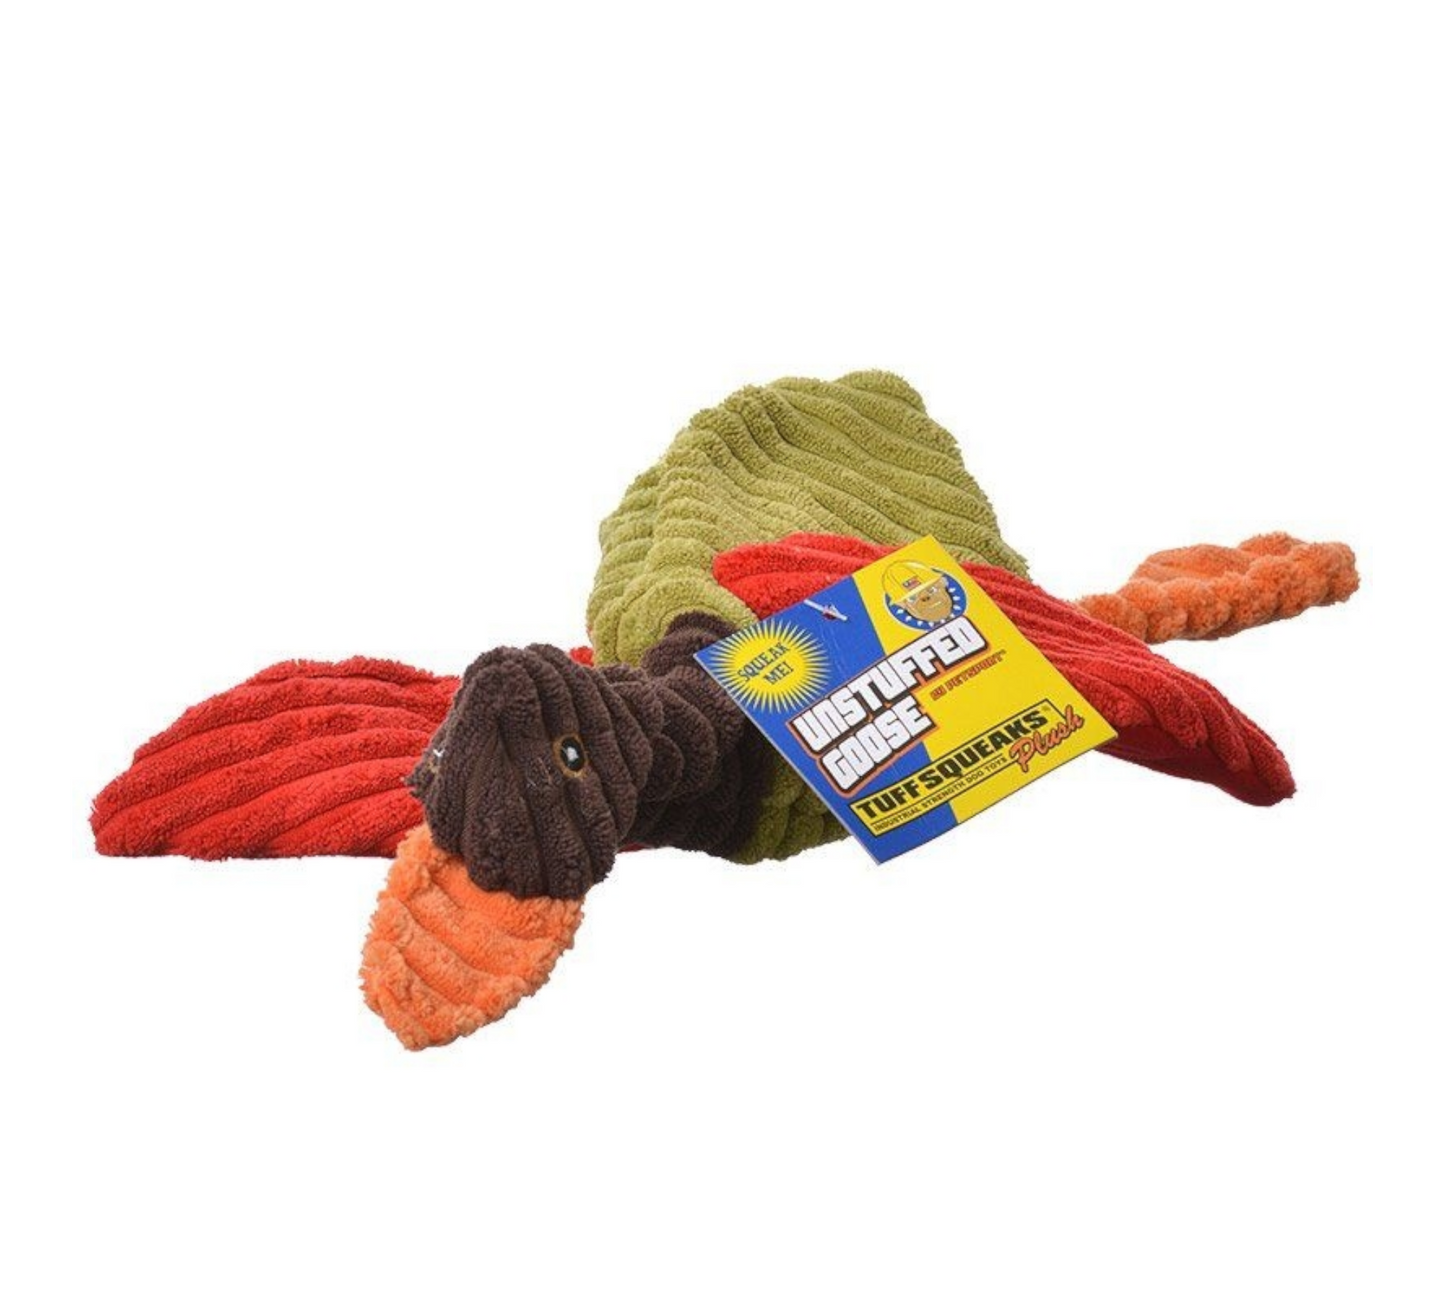 Petsport Tuff Squeak Unstuffed Goose Plush Dog Toy, Color Varies